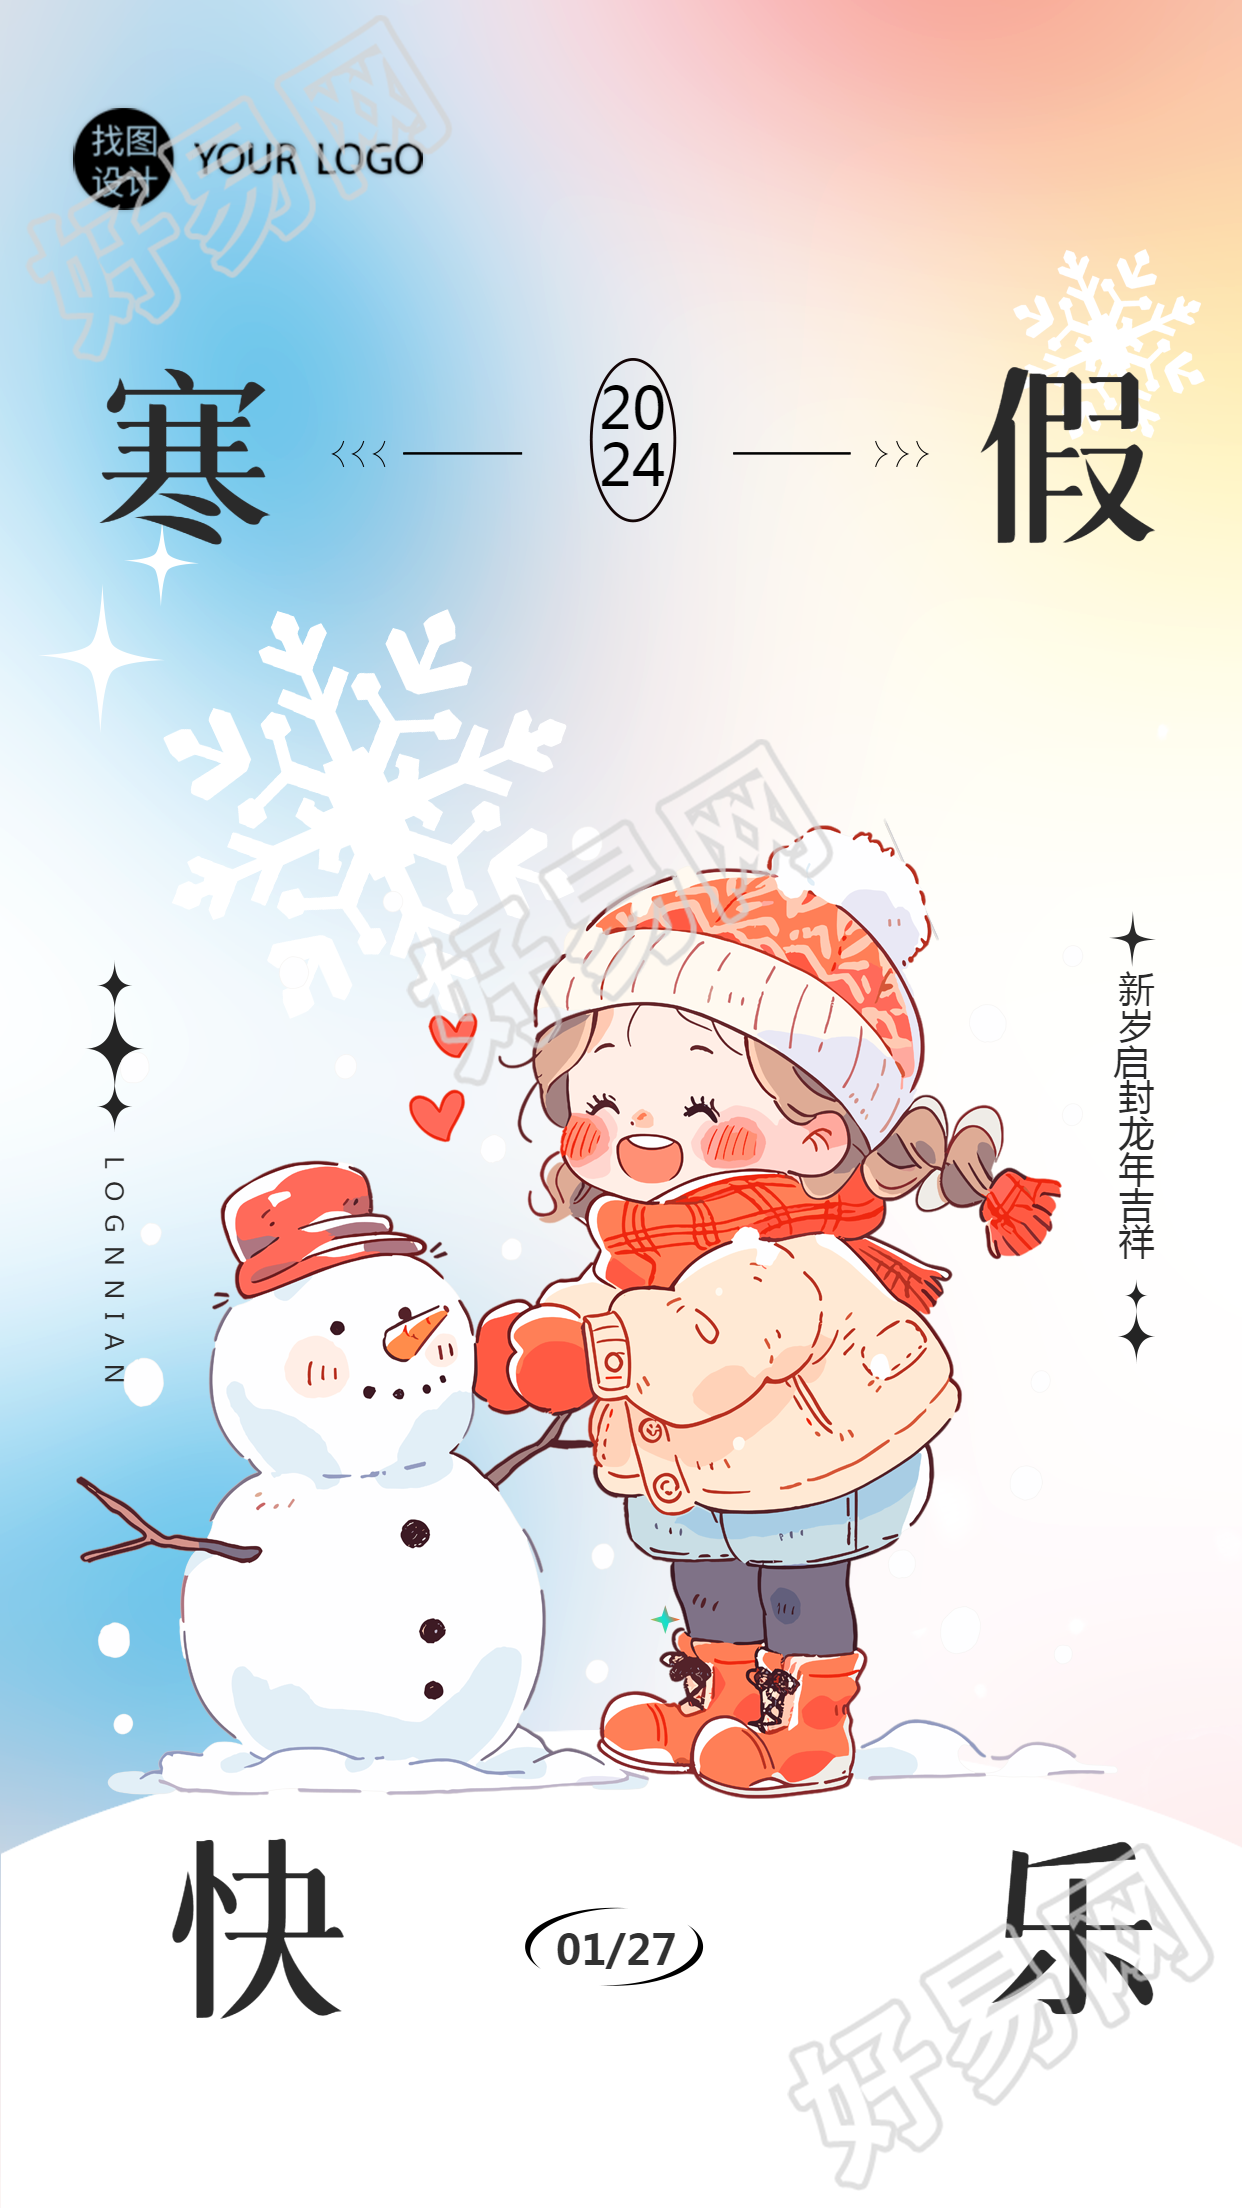 寒假快乐动漫风格手机海报